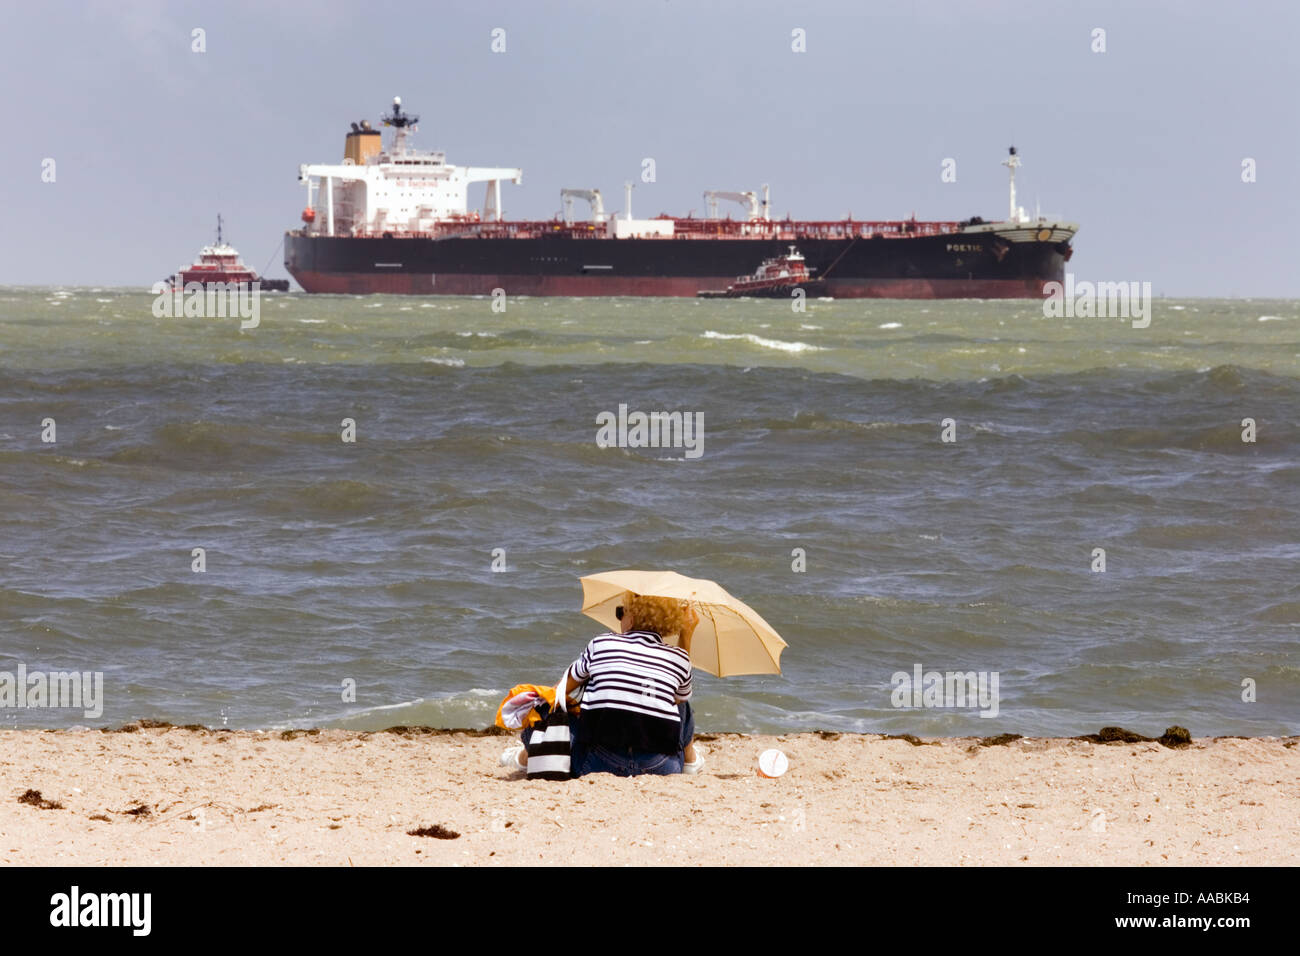 woman-sitting-on-a-corpus-christi-texas-beach-with-oil-tanker-and-AABKB4.jpg